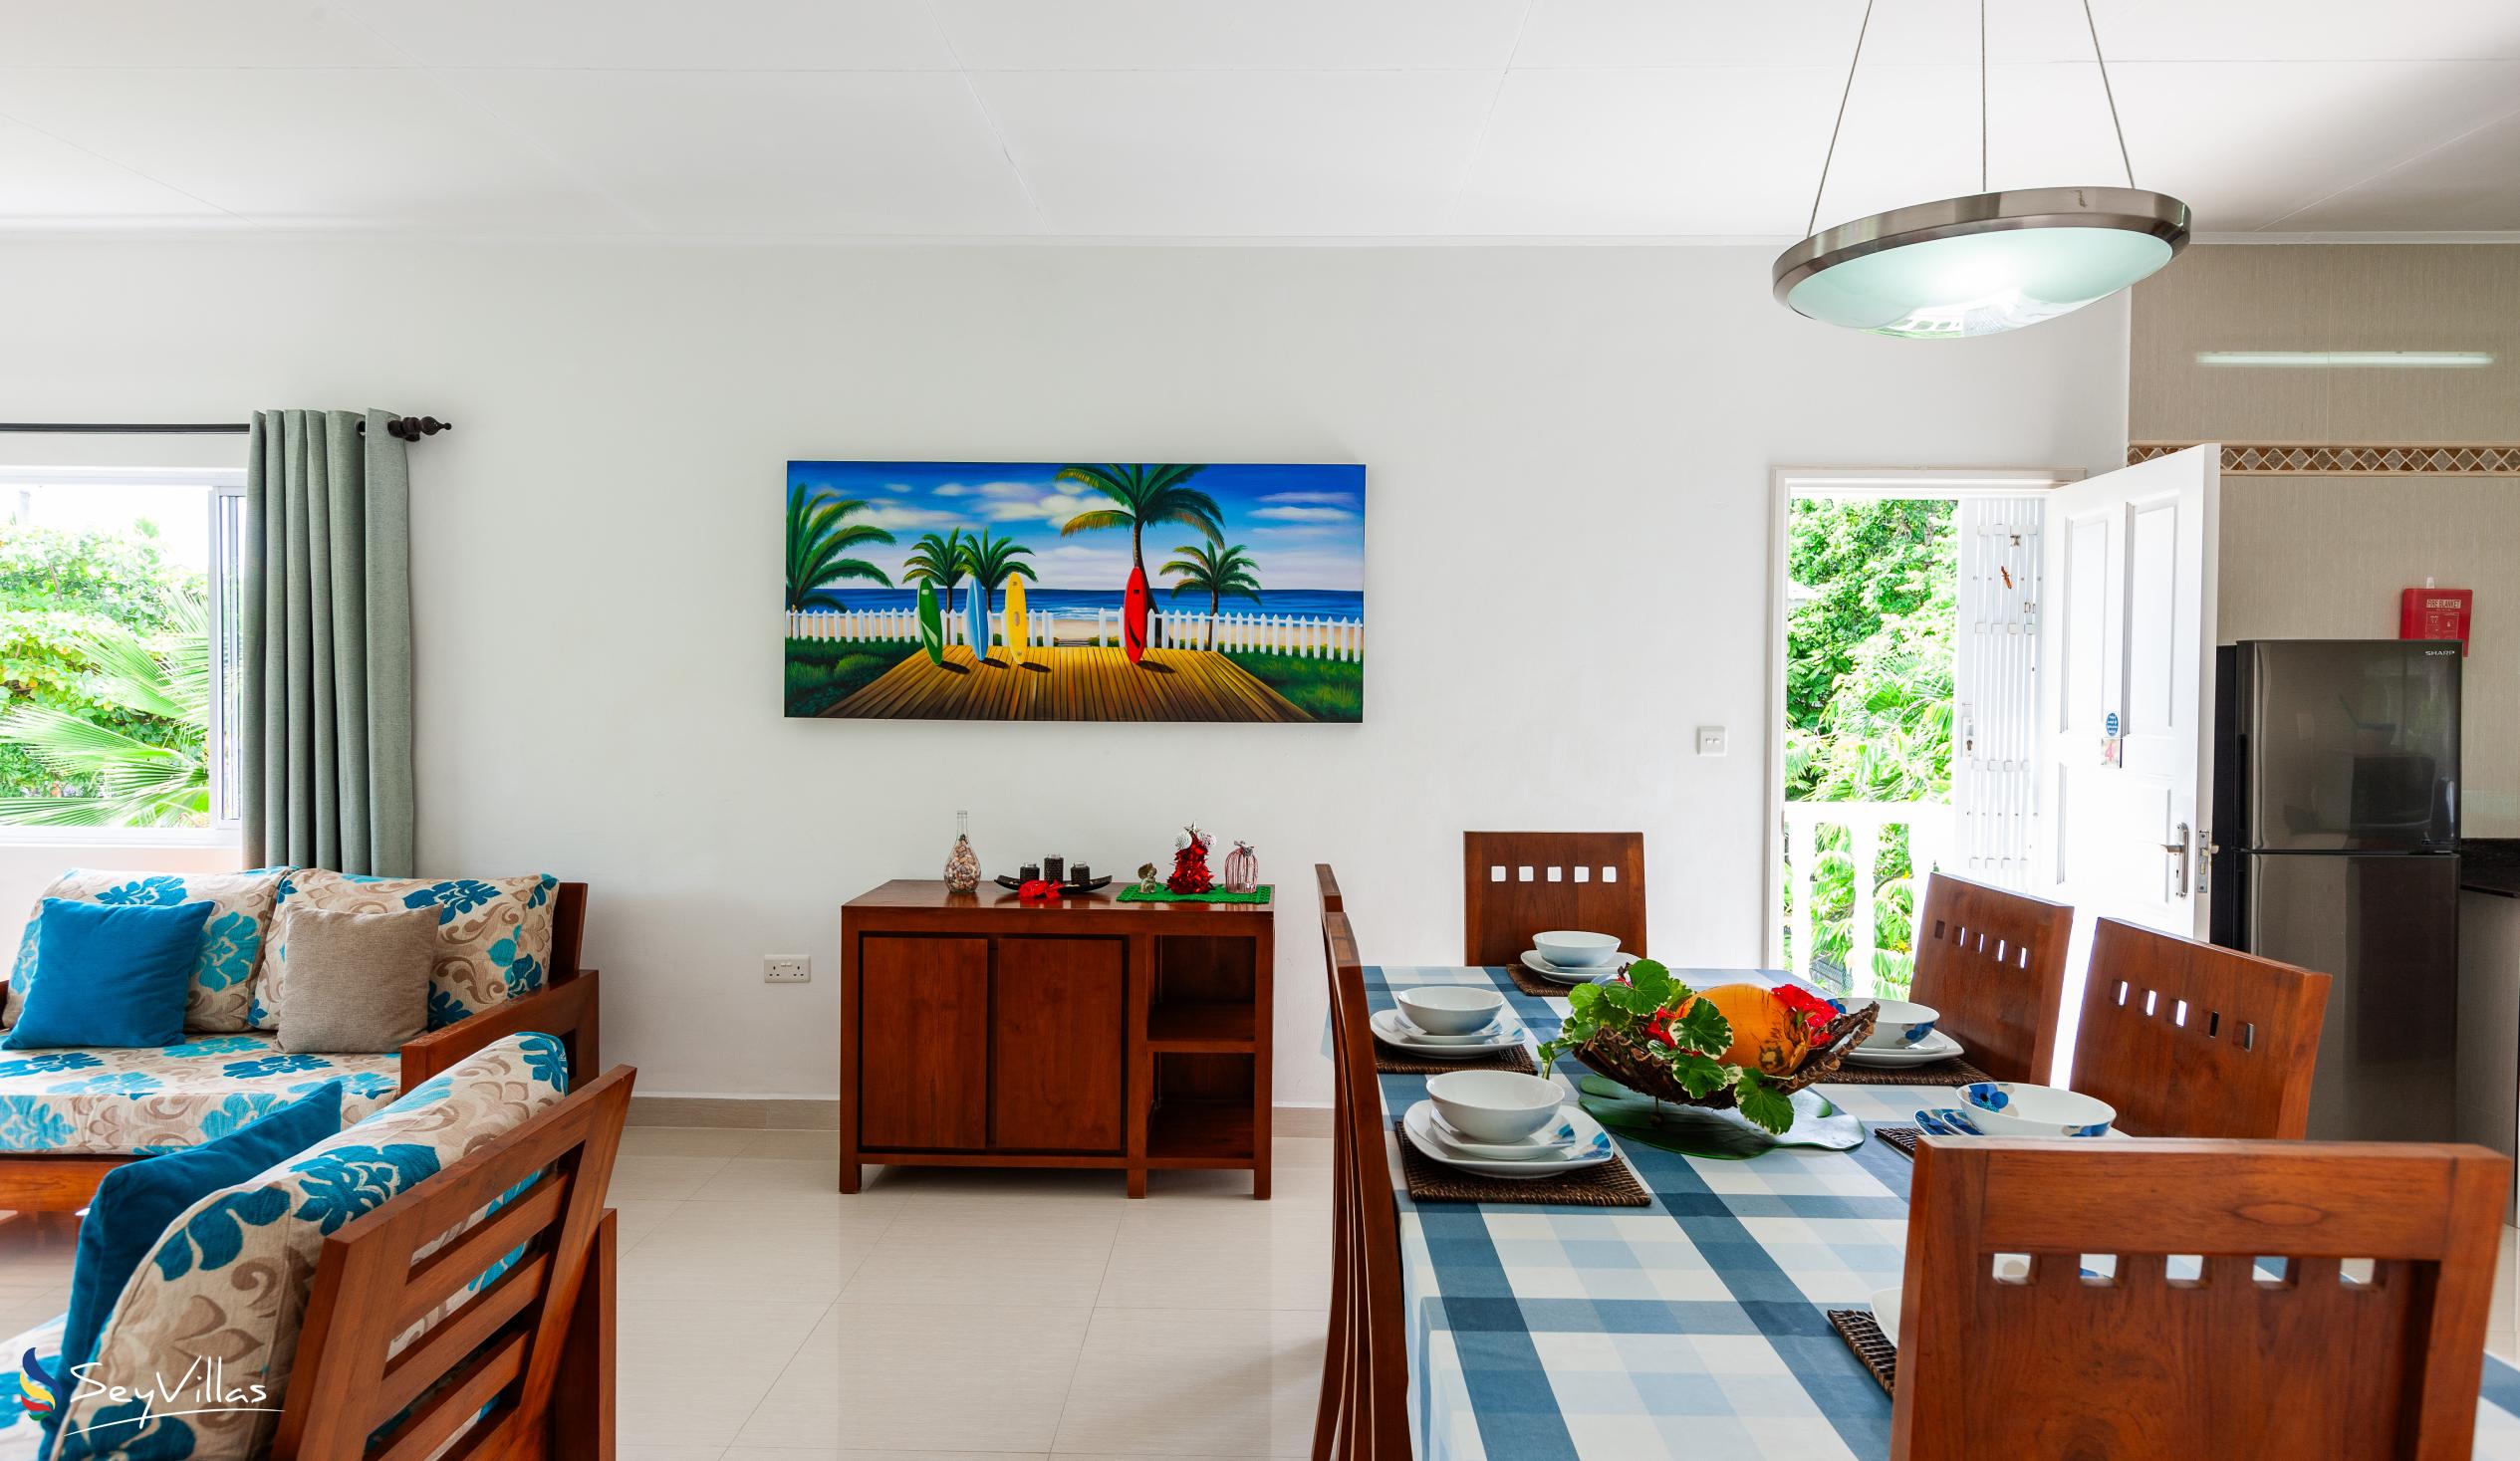 Photo 23: Casa Tara Villas - 2-Bedroom Apartment - Praslin (Seychelles)